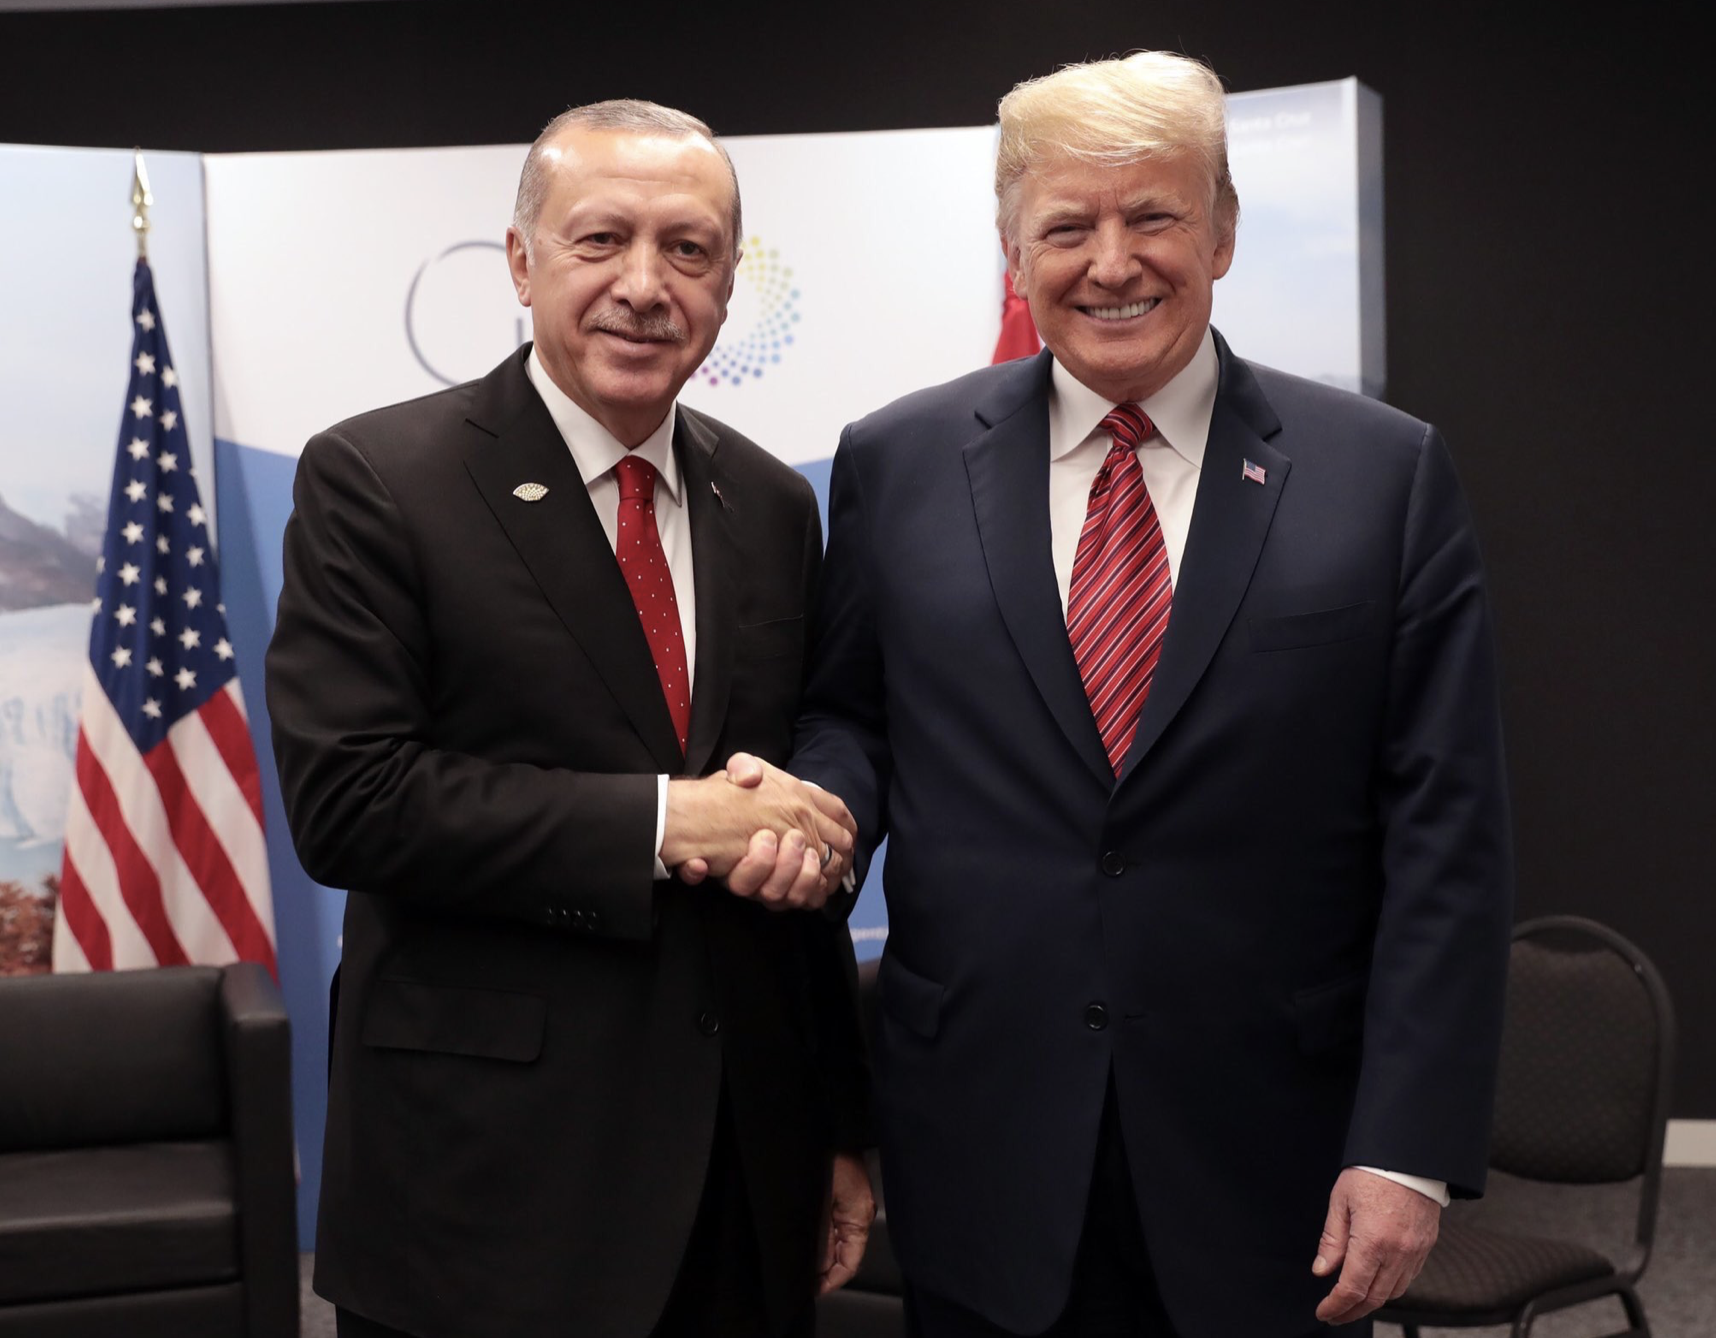 Επικοινωνία Τραμπ-Ερντογάν για Συρία και Λιβύη και συμφώνησαν συνέχεια στενής στρατιωτικής συνεργασίας